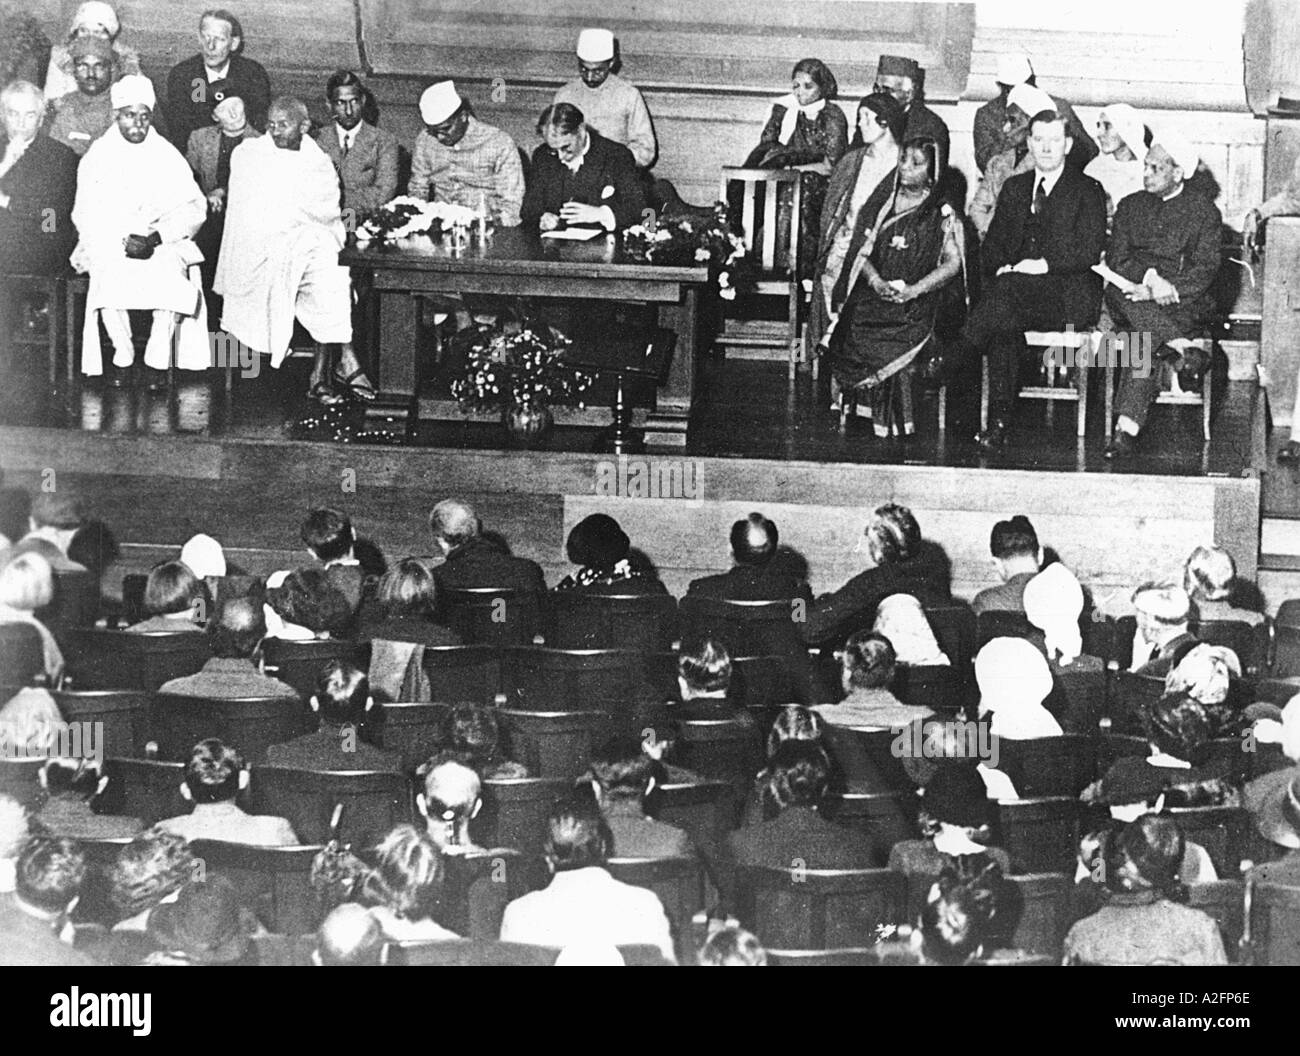 Empfang für Mahatma Gandhi im Friends Meeting House Euston Road London England Vereinigtes Königreich Großbritannien 12. September 1931 1930 Stockfoto